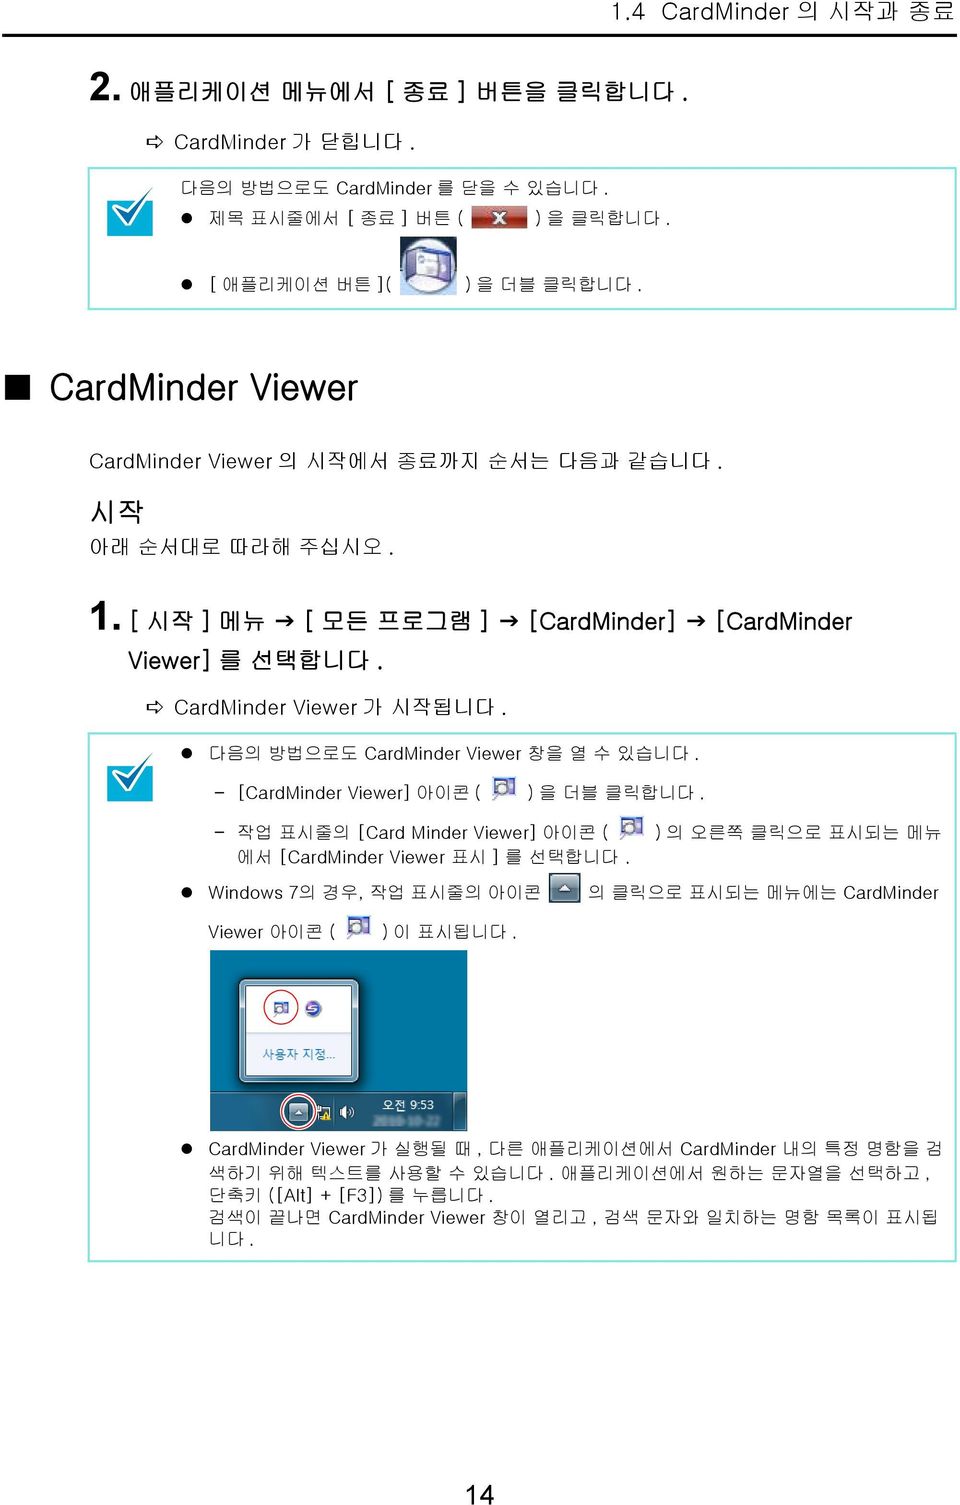 다음의 방법으로도 CardMinder Viewer 창을 열 수 있습니다. - [CardMinder Viewer] 아이콘 ( ) 을 더블 클릭합니다. - 작업 표시줄의 [Card Minder Viewer] 아이콘 ( ) 의 오른쪽 클릭으로 표시되는 메뉴 에서 [CardMinder Viewer 표시 ] 를 선택합니다.